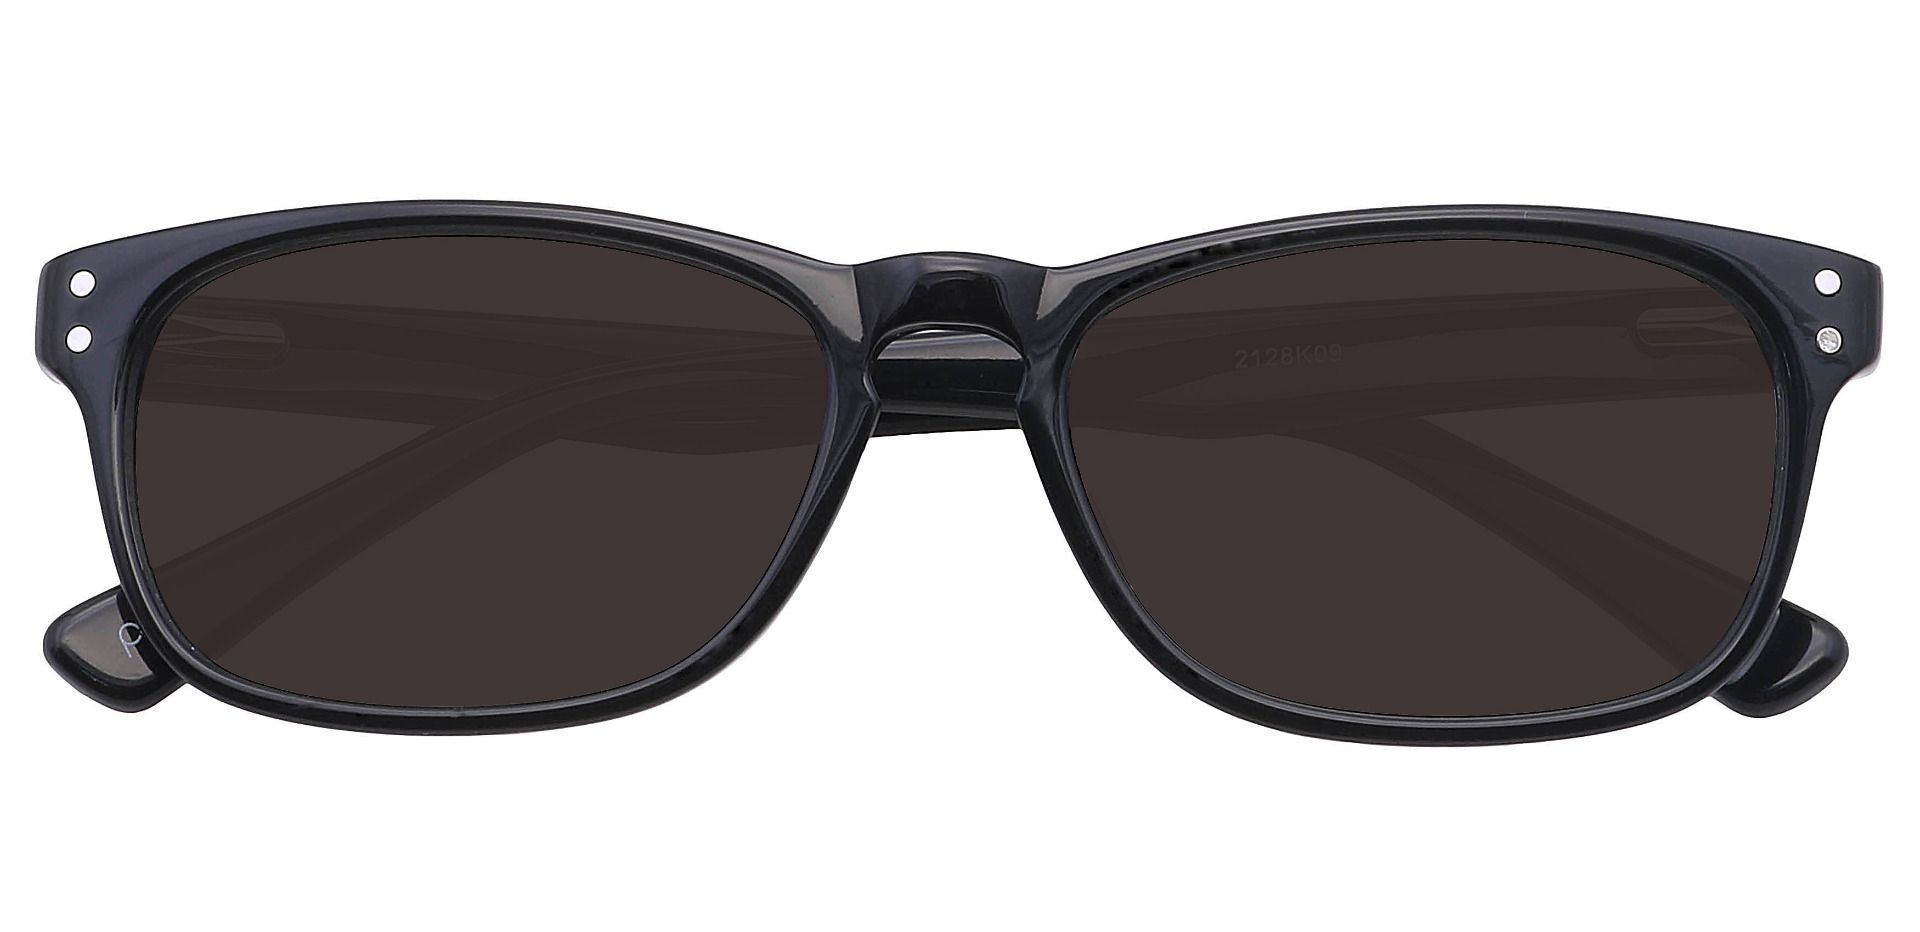 Morris Rectangle Reading Sunglasses - Black Frame With Gray Lenses